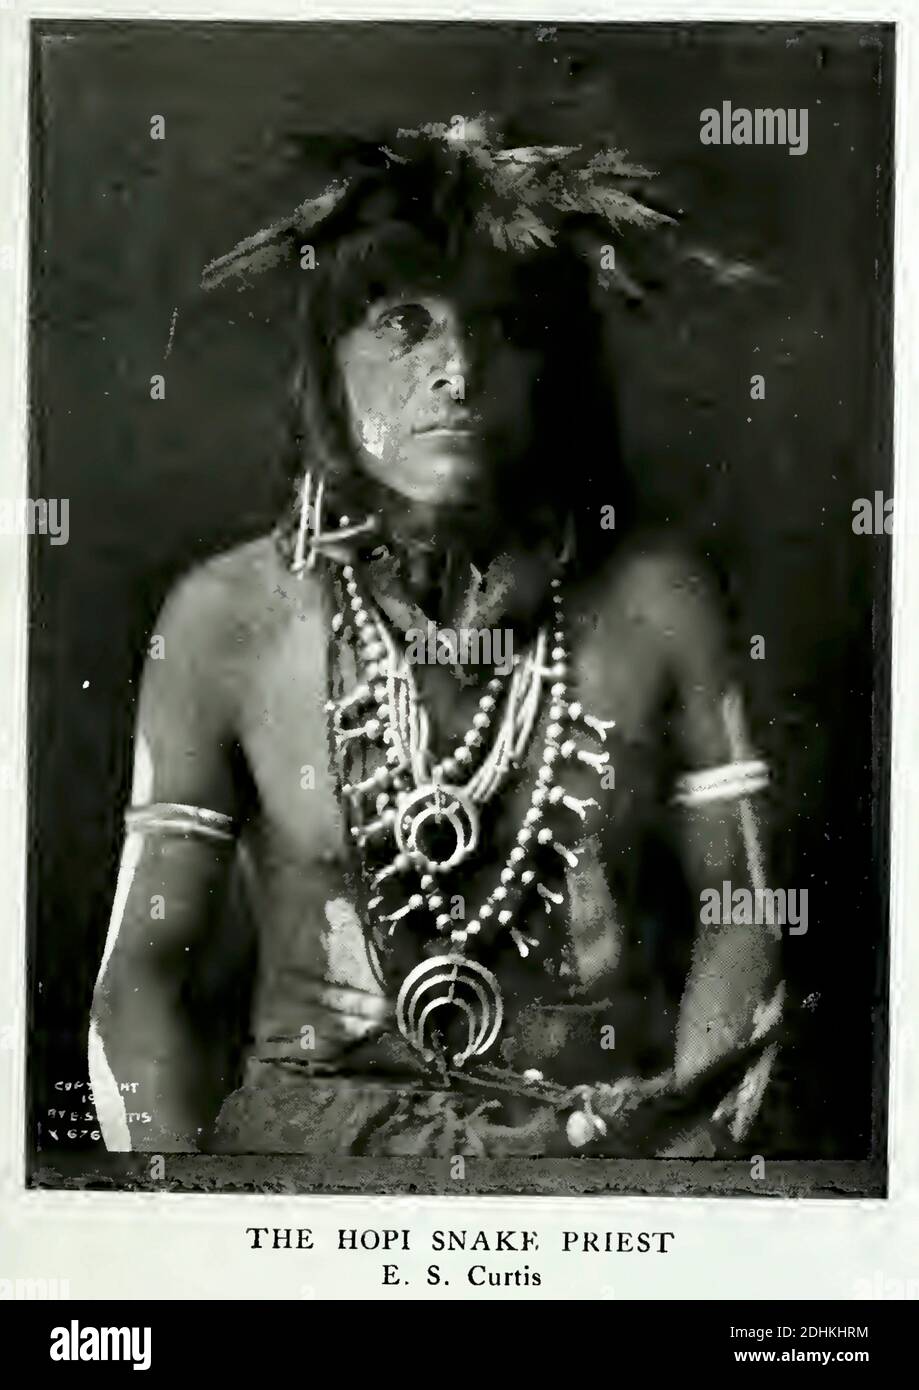 Historisches Foto eines hopi-Schlangenclanpriesters TeV GUI, aufgenommen vom bekannten Fotografen Edward S Curtis. Der Priester ist in traditioneller Tracht. Stockfoto